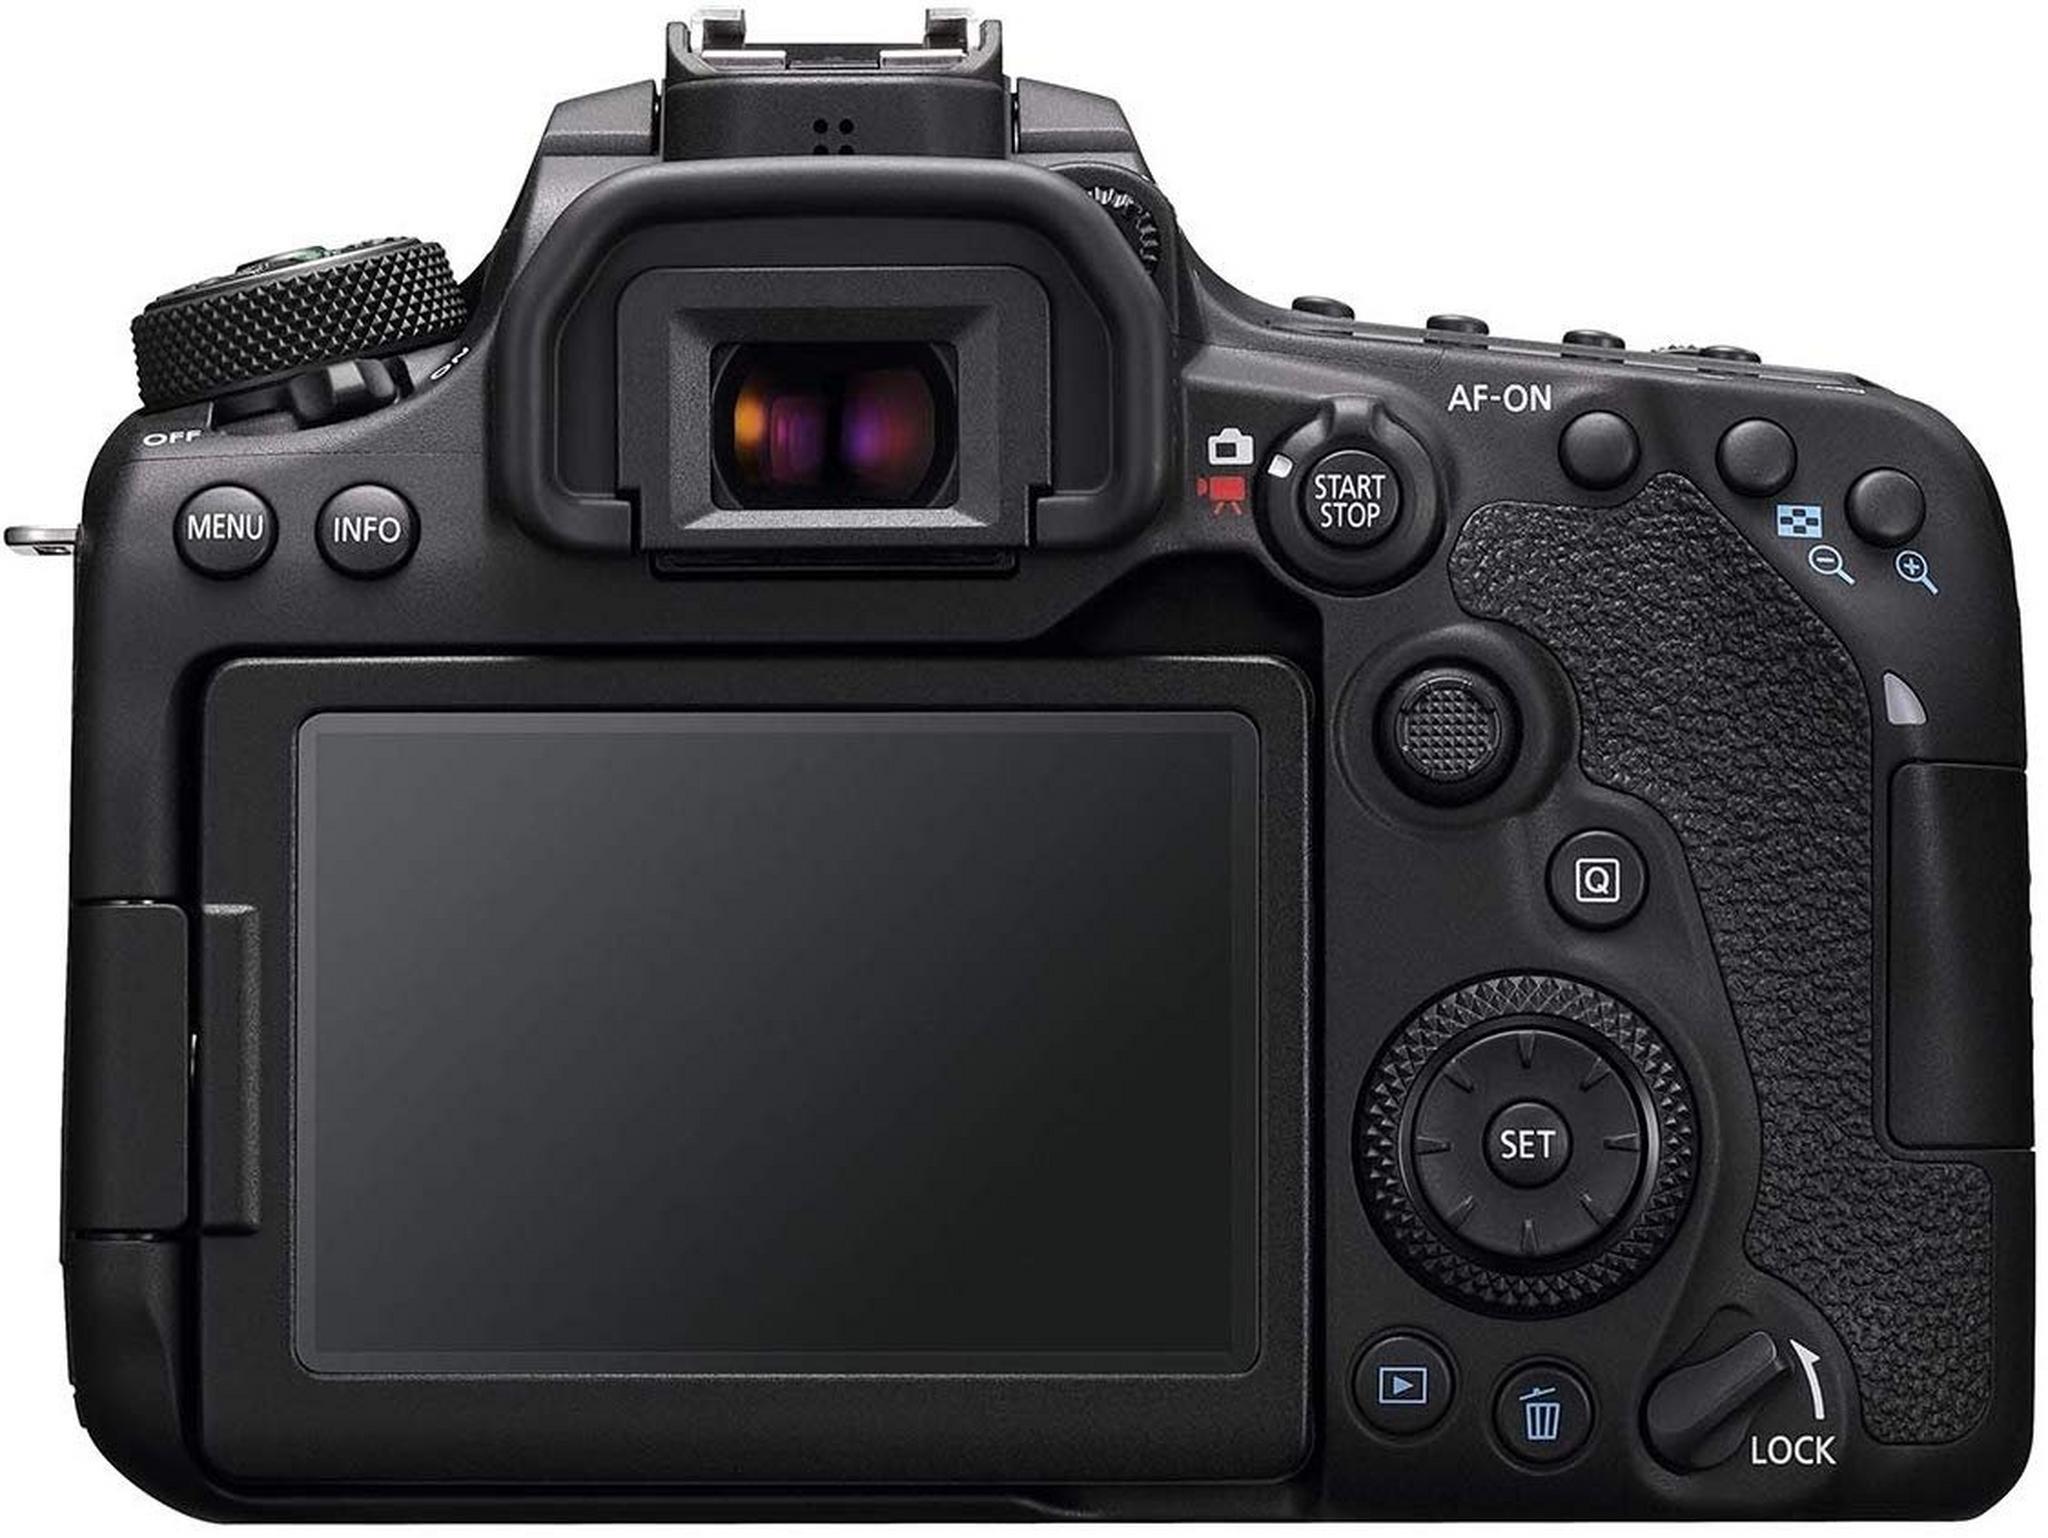 كاميرا كانون 90D الرقمية بعدسة عاكسة DSLR بدقة 32.5 ميجابكسل 4كي + عدسة اي اف - اس 18-135 ملم